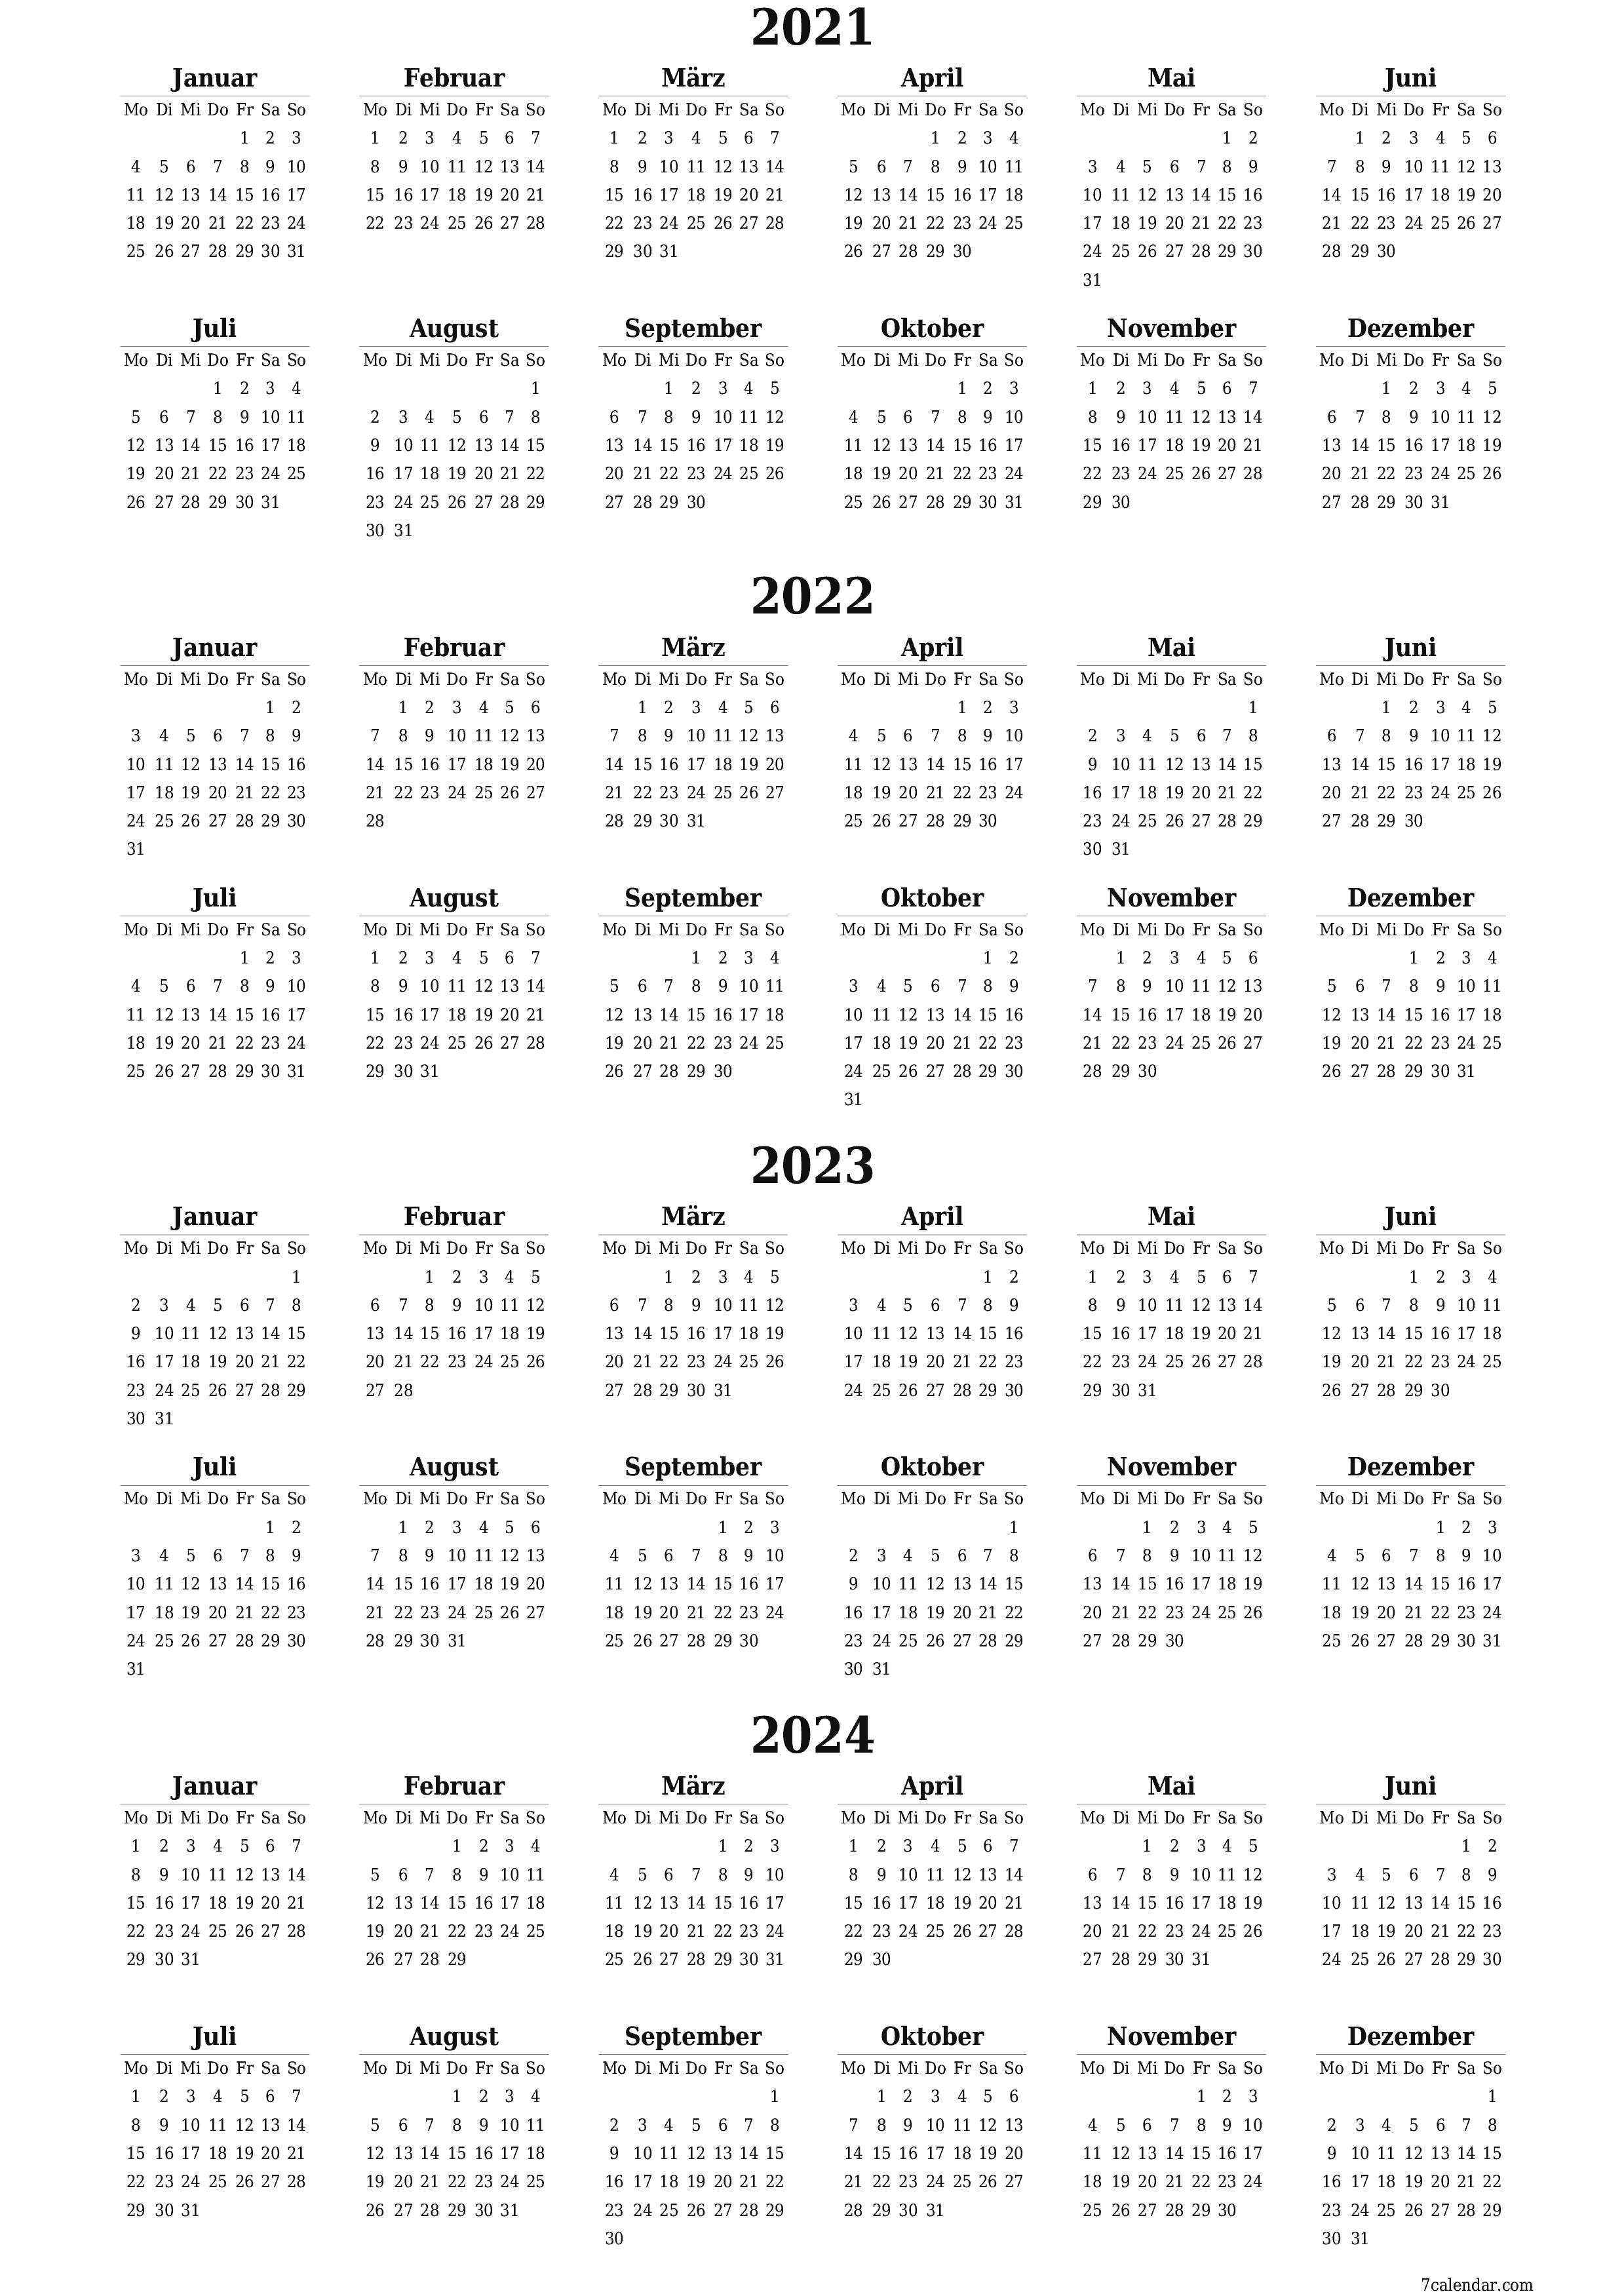  zum Ausdrucken Wandkalender vorlage kostenloser vertikal Jahreskalender Kalender Dezember (Dez) 2021